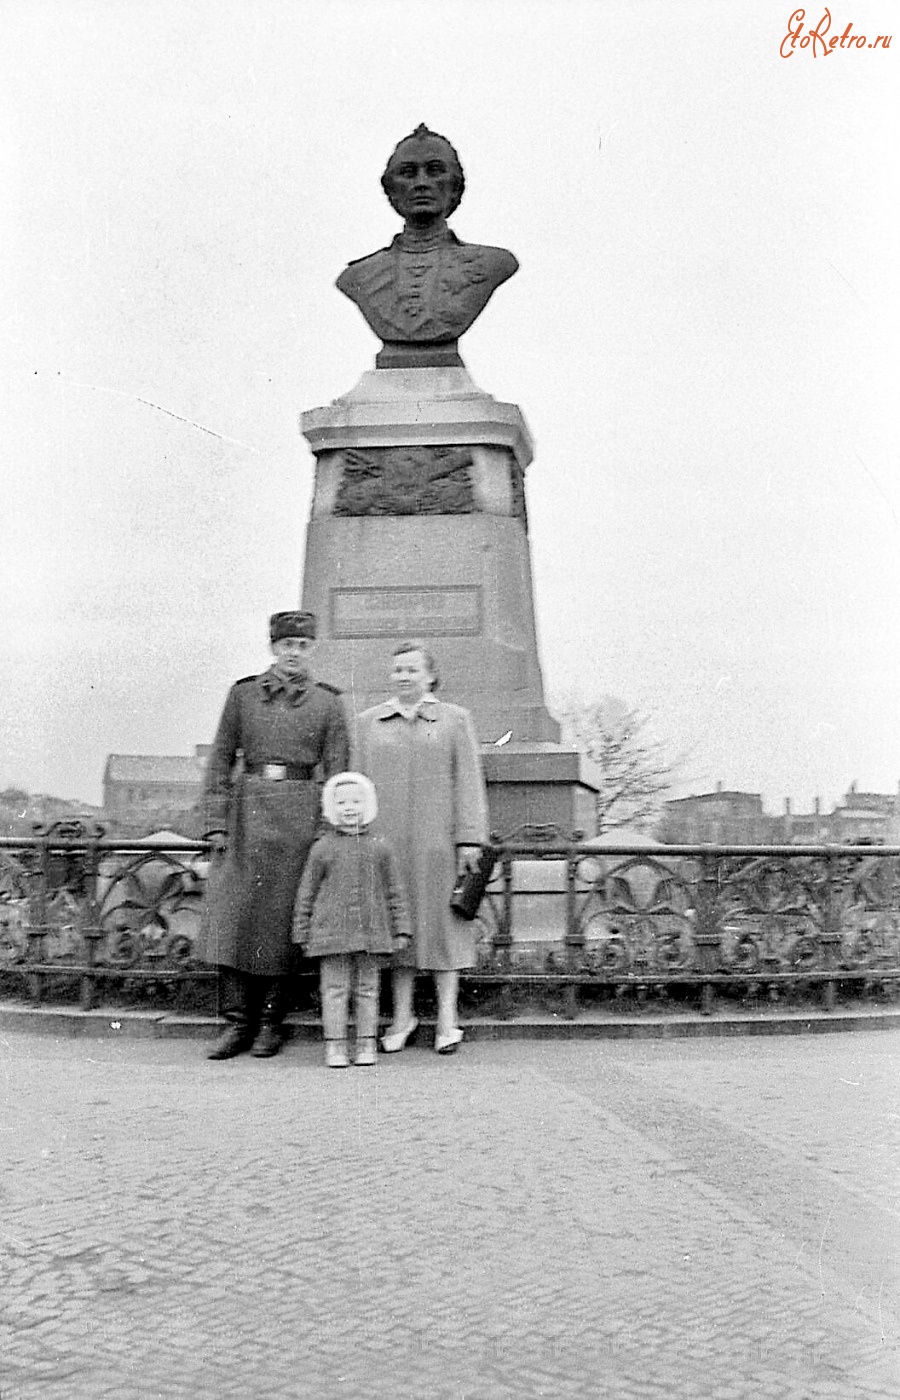 Калининград - Калининград. Бюст А. В. Суворова у руин Королевского замка на постаменте, на котором до 1945 года стоял памятник Отто Бисмарку.